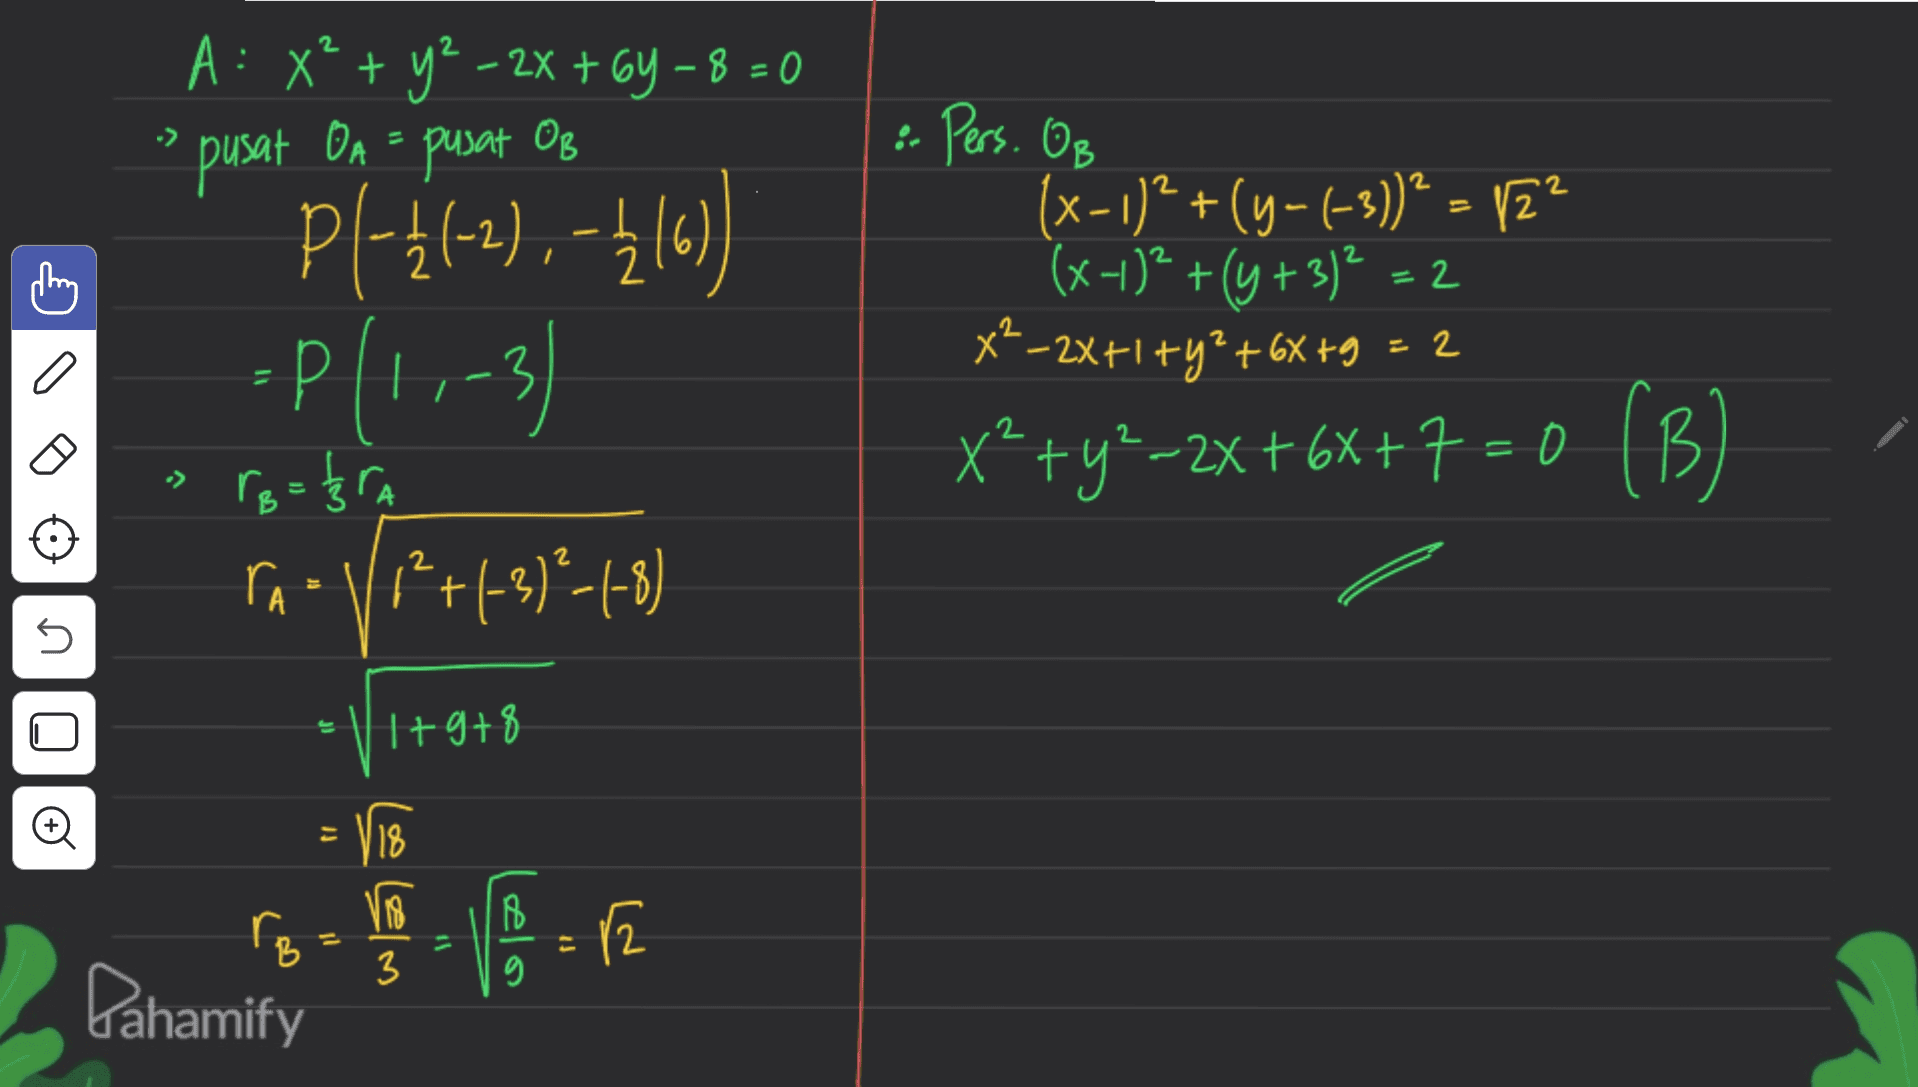 2 A: x² + y2 - 2x + 64 – 8 = 0 OB pusat OA = pusat 2 X : Pers. OB (x - 1)2 +(y-(-3)) ? = 12 (x-1)2 + (y + 3) = 2 x6X +9 XP-2x+1+y*+6%+9 = 2 p{-}(-2), -1(0) =P(1,-3) 2 2 = 2 x*+y*–2x+67+7=0 (B) ( B 2 t U PIhre r₂ = 33 TA - VP+1-3)²-1-8) (? -V1+9+8 = 118 VB r2 3 Pahamify 1+9+8 rom 16 = 12 B g 